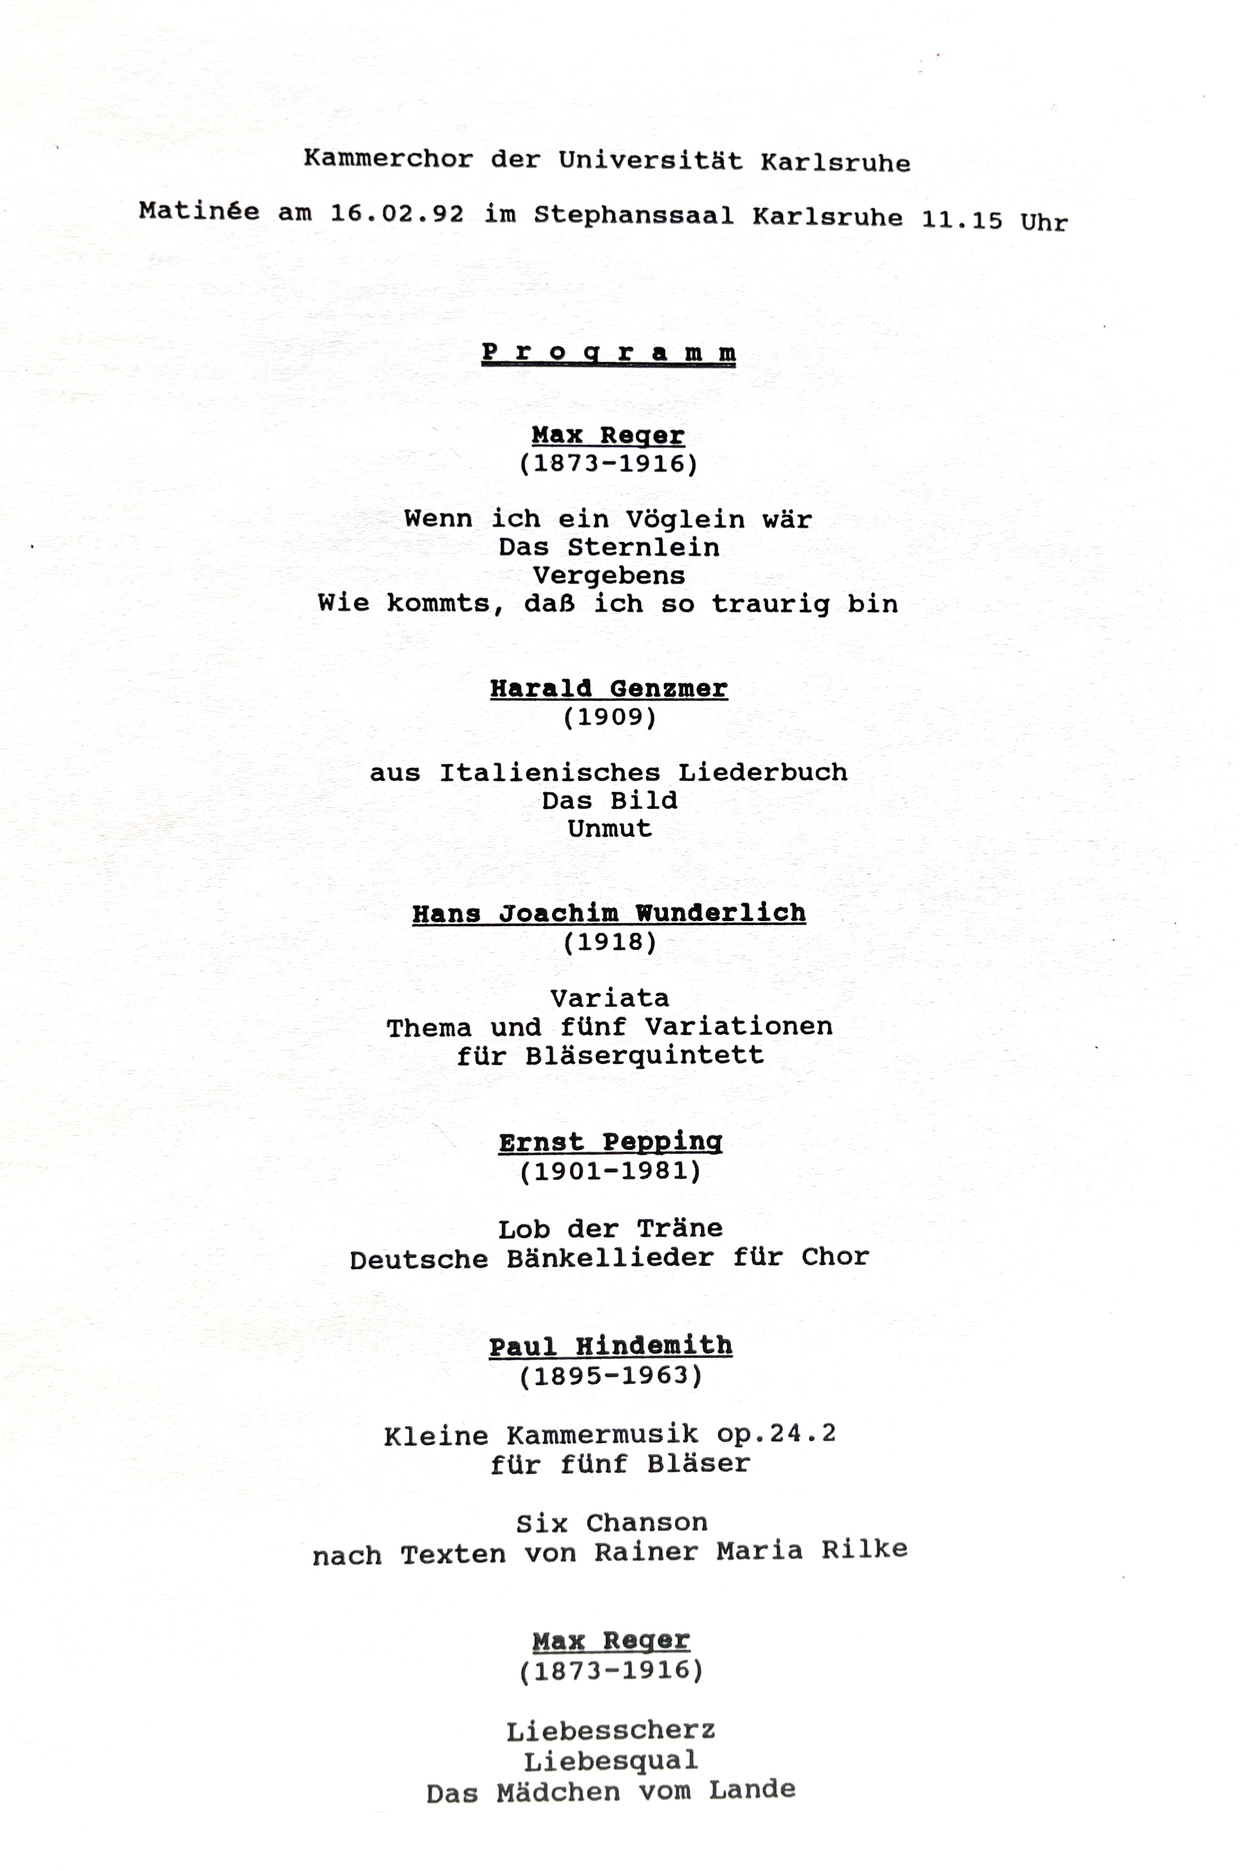 Programm Matinee Februar 1992